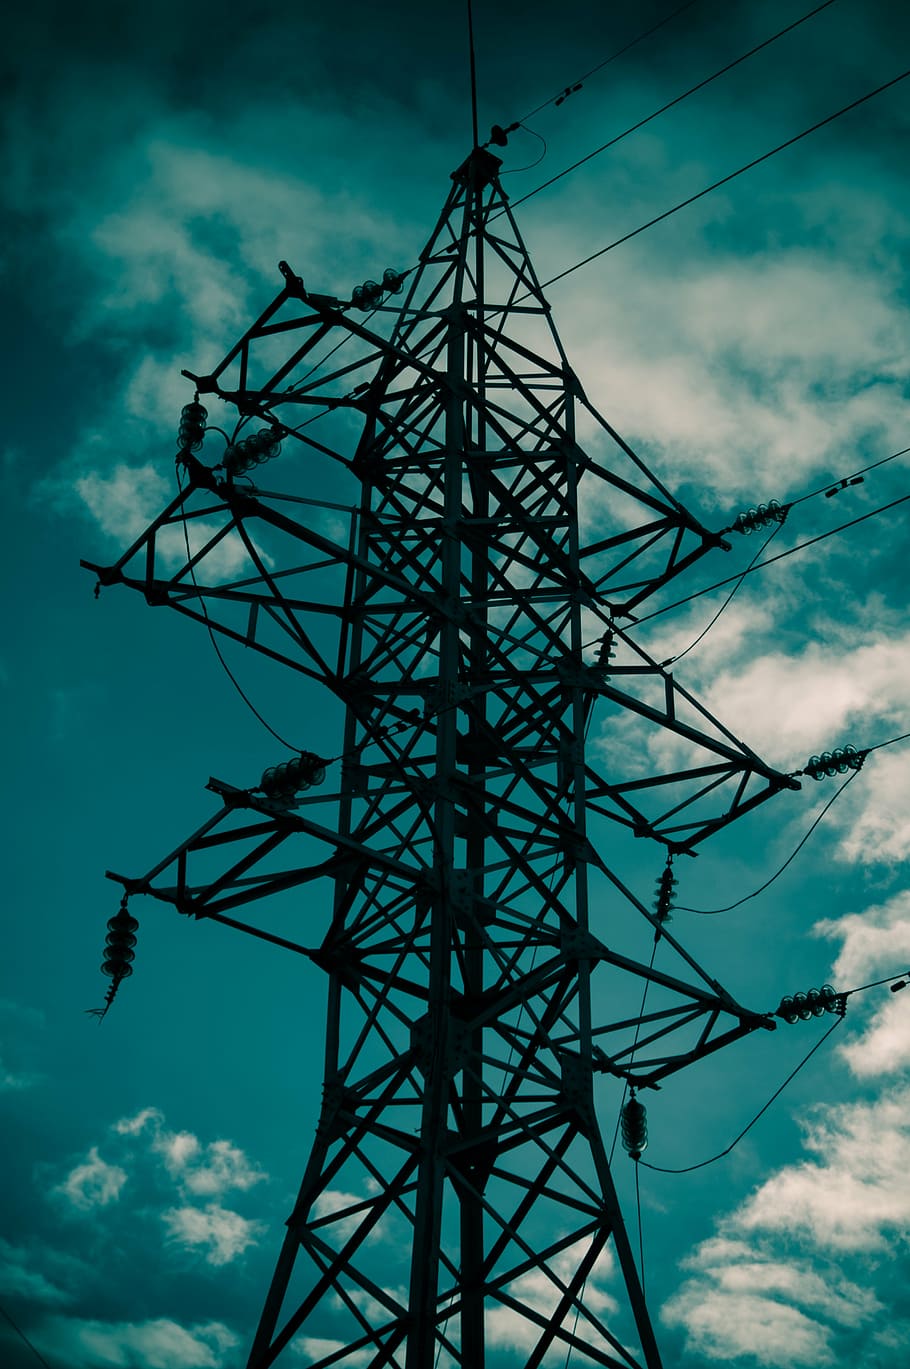 postes de energía, líneas eléctricas, cables, electricidad, nube - cielo, cielo, vista de ángulo bajo, naturaleza, estructura construida, arquitectura